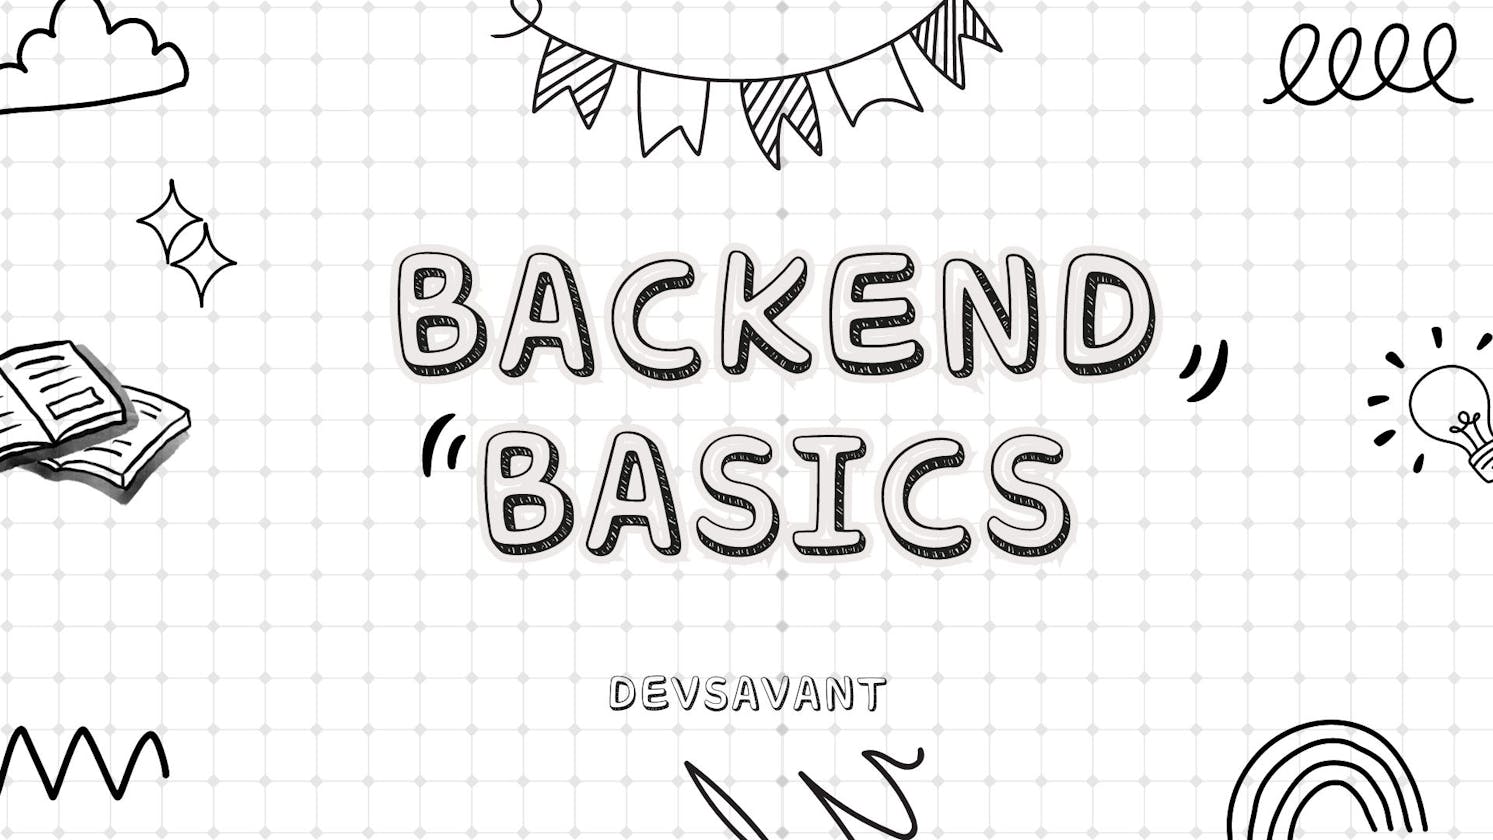 Backend Development Basics - An Overview